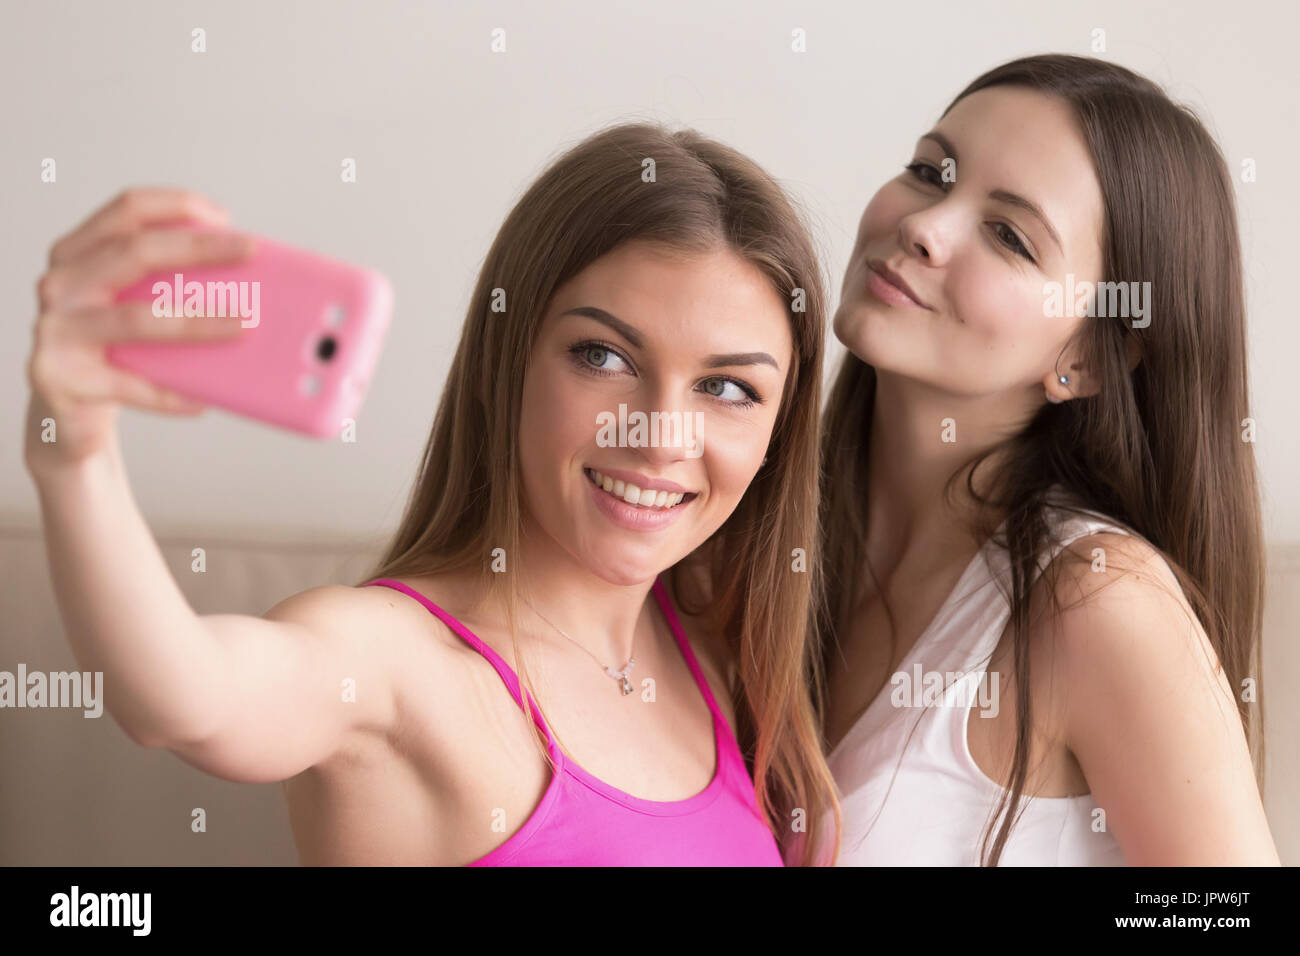 Zwei junge Frau nehmen Selfie Fotos mit dem Handy Stockfoto